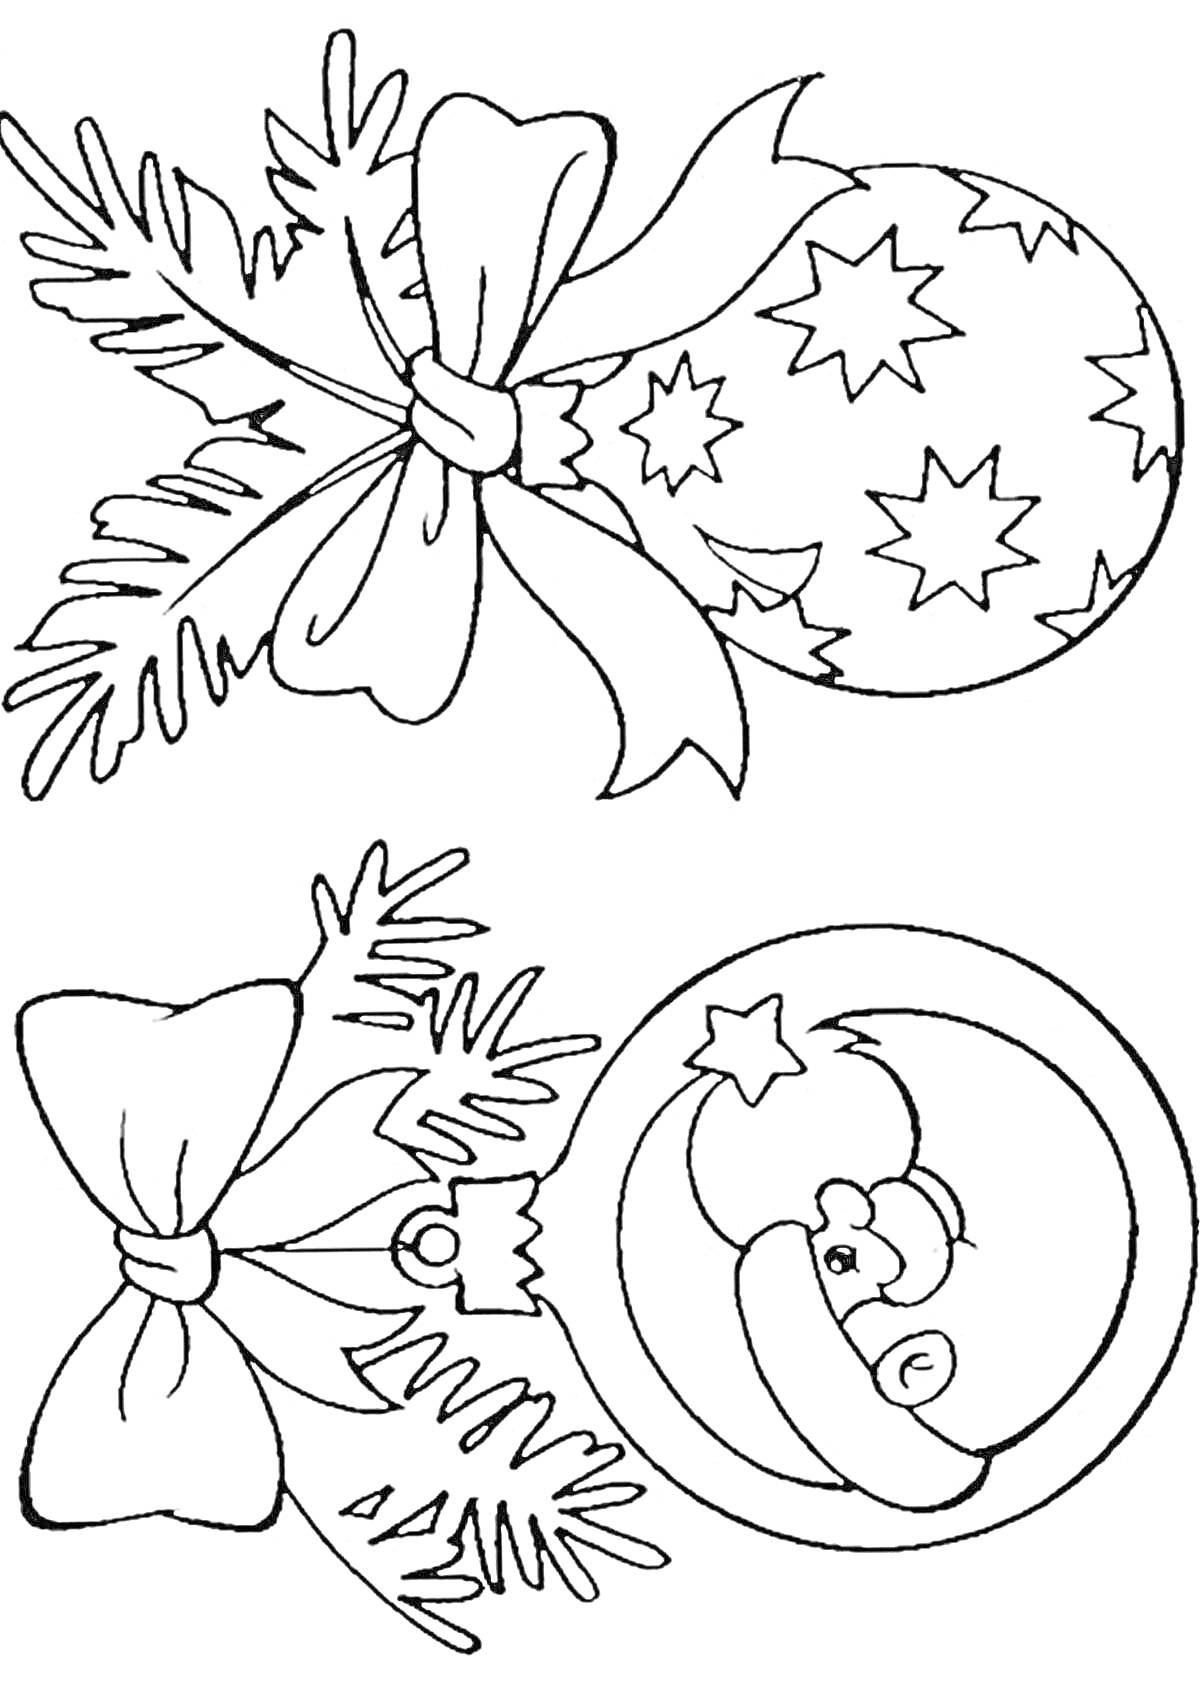 Раскраска Ёлочные игрушки с еловыми ветками и бантами: шар со звездами и шар с Дедом Морозом